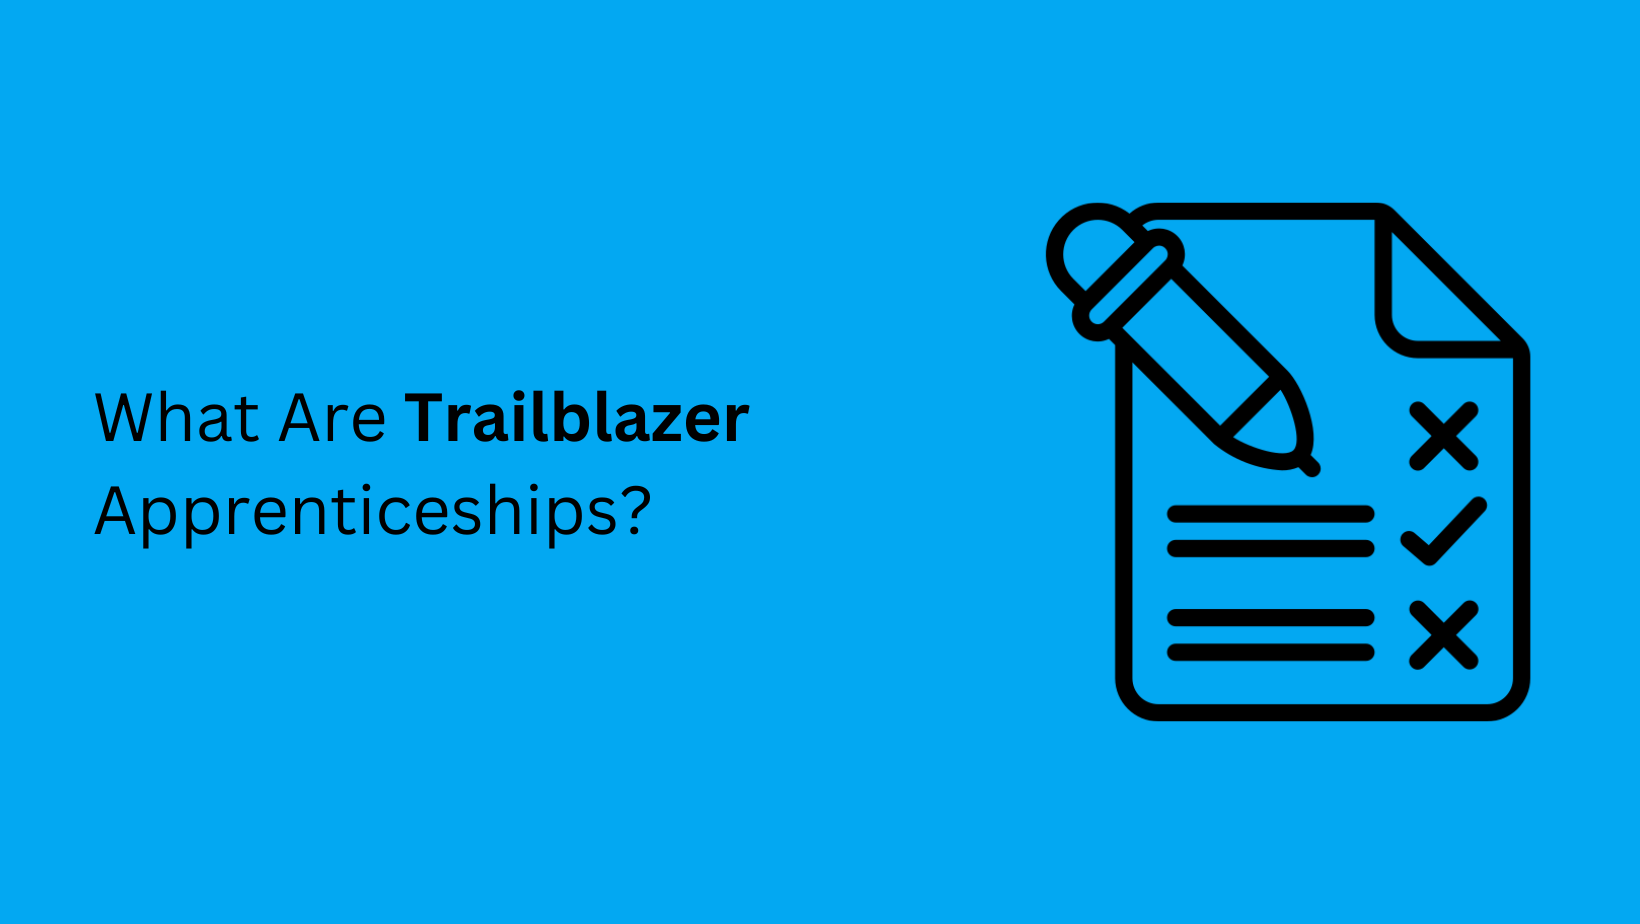 What Are Trailblazer Apprenticeships